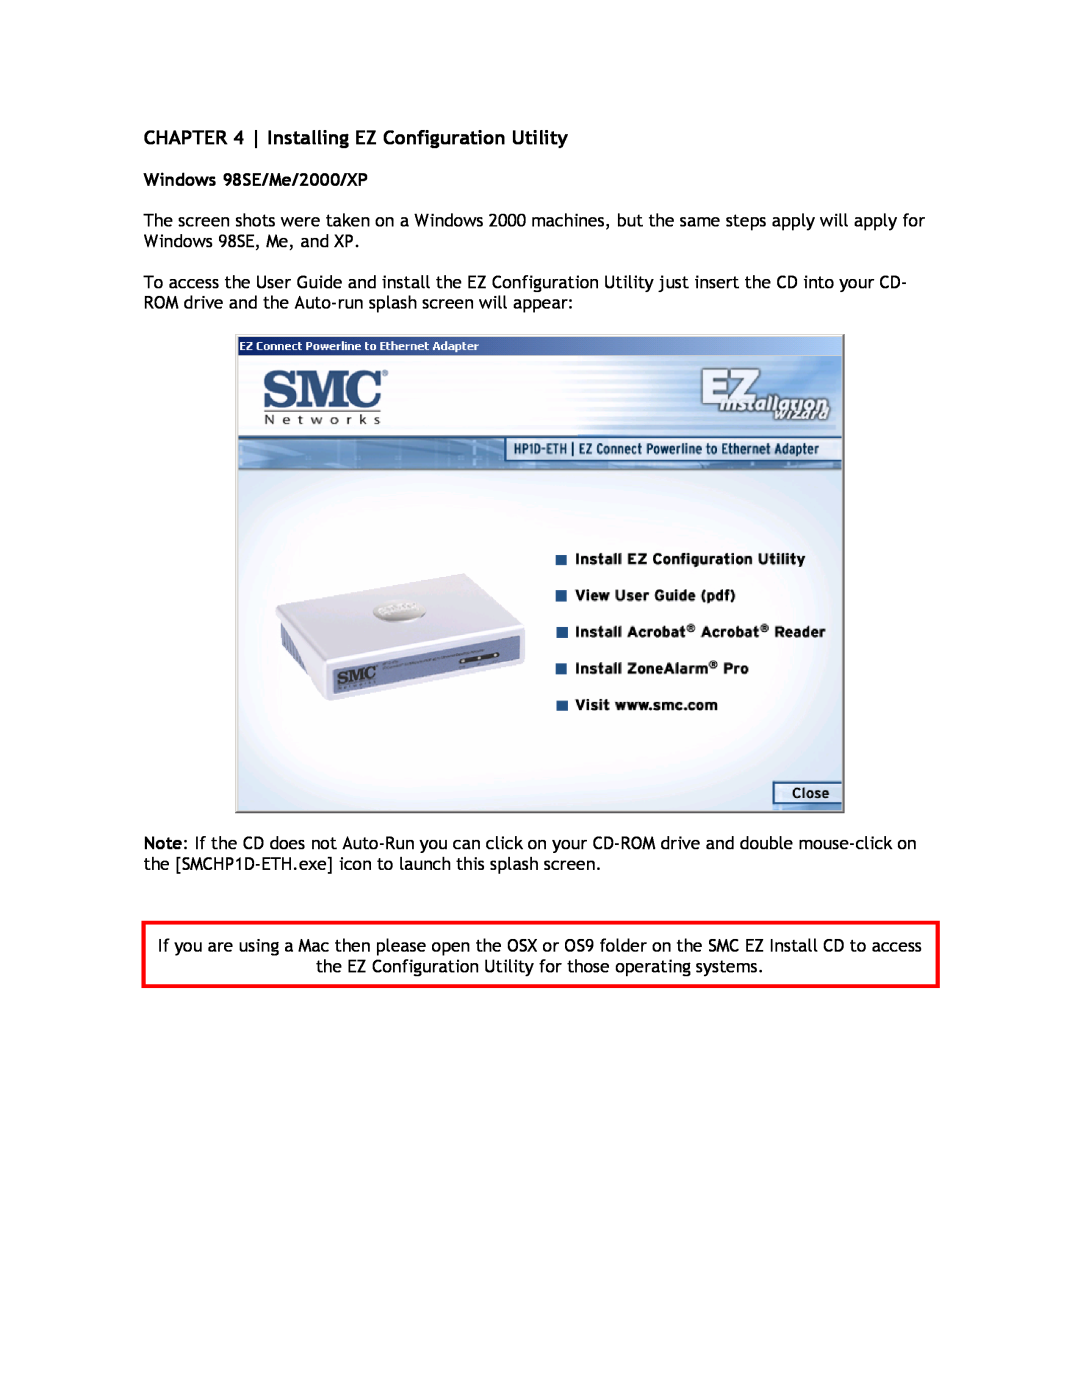 SMC Networks SMCHP1D-ETH manual Installing EZ Configuration Utility, Windows 98SE/Me/2000/XP 